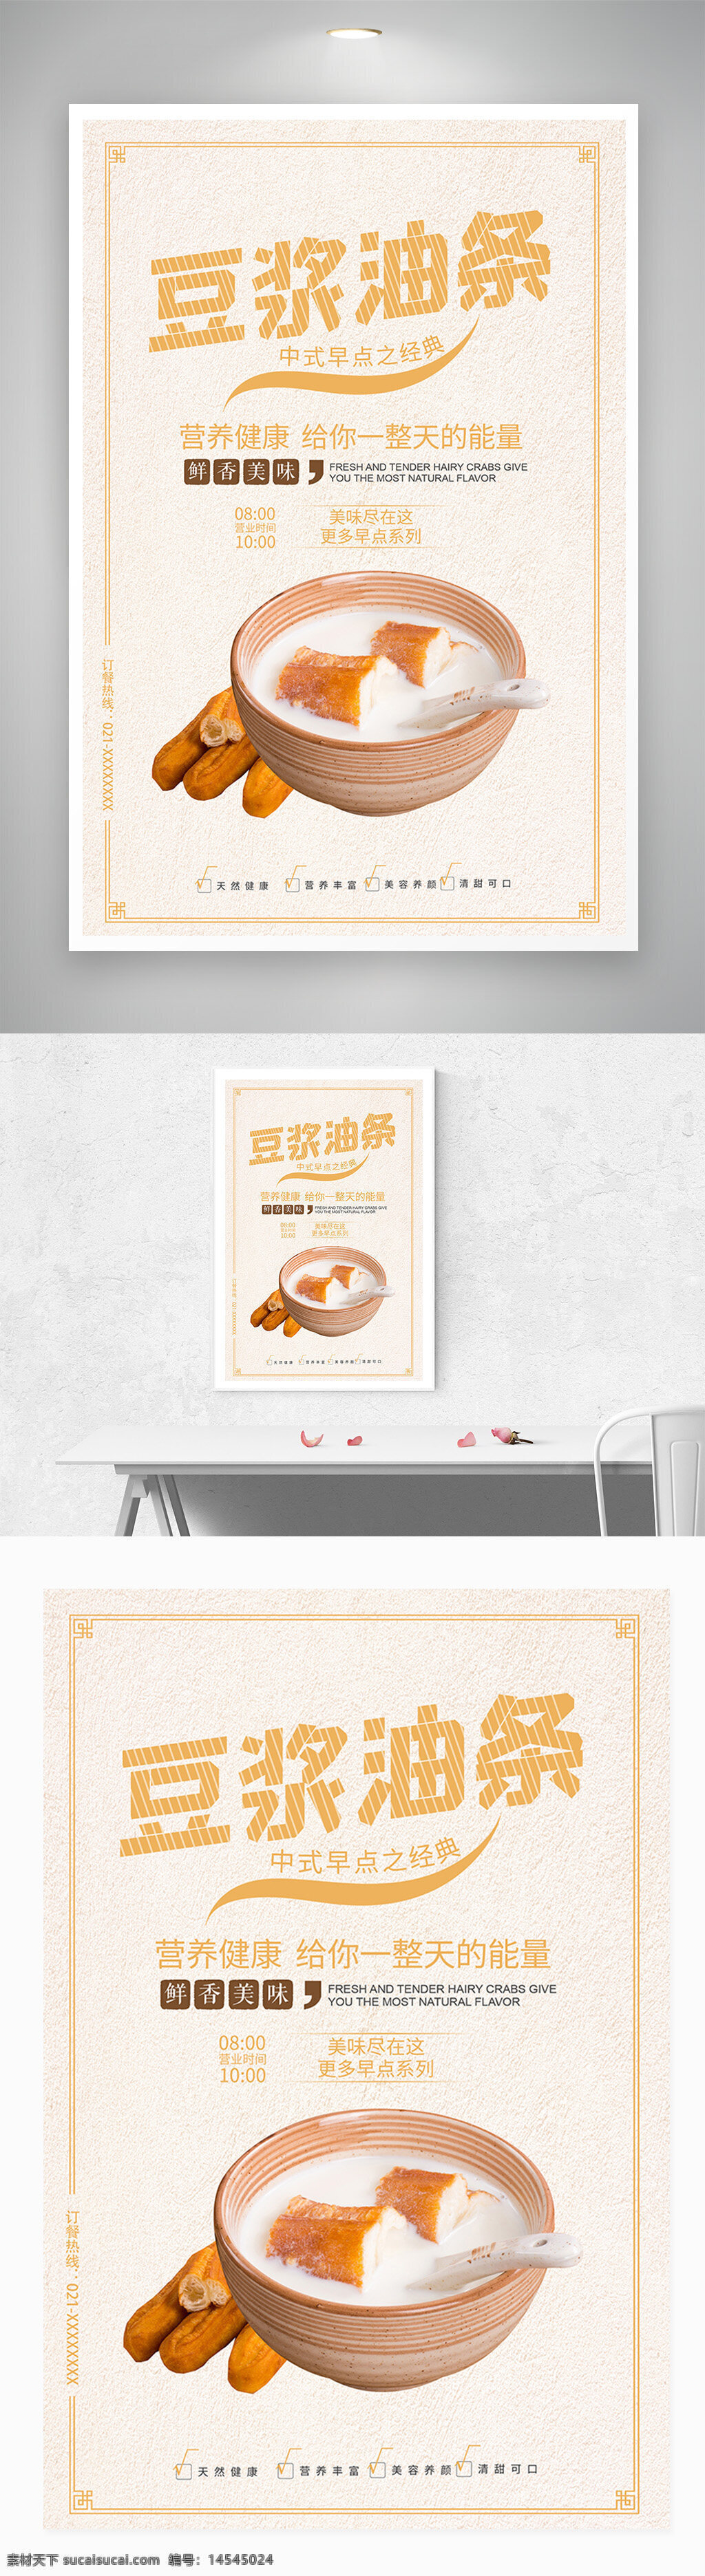 豆浆 油条 中式 早茶 宣传 海报